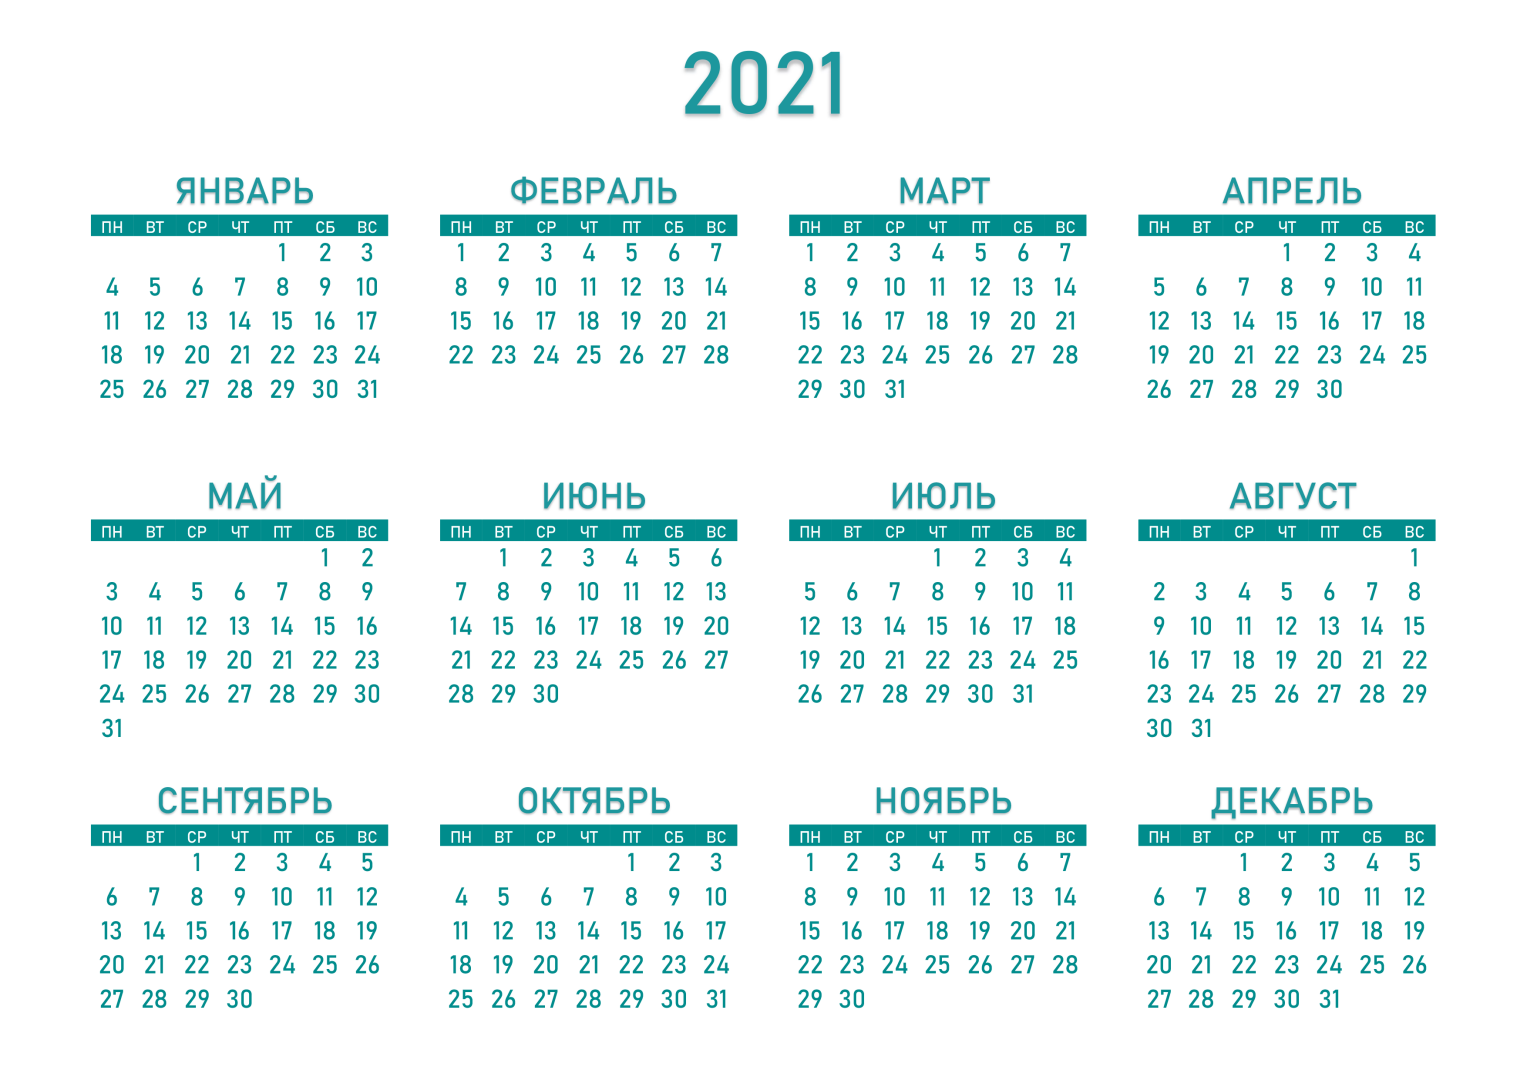 шаблон календаря 2023 с фото